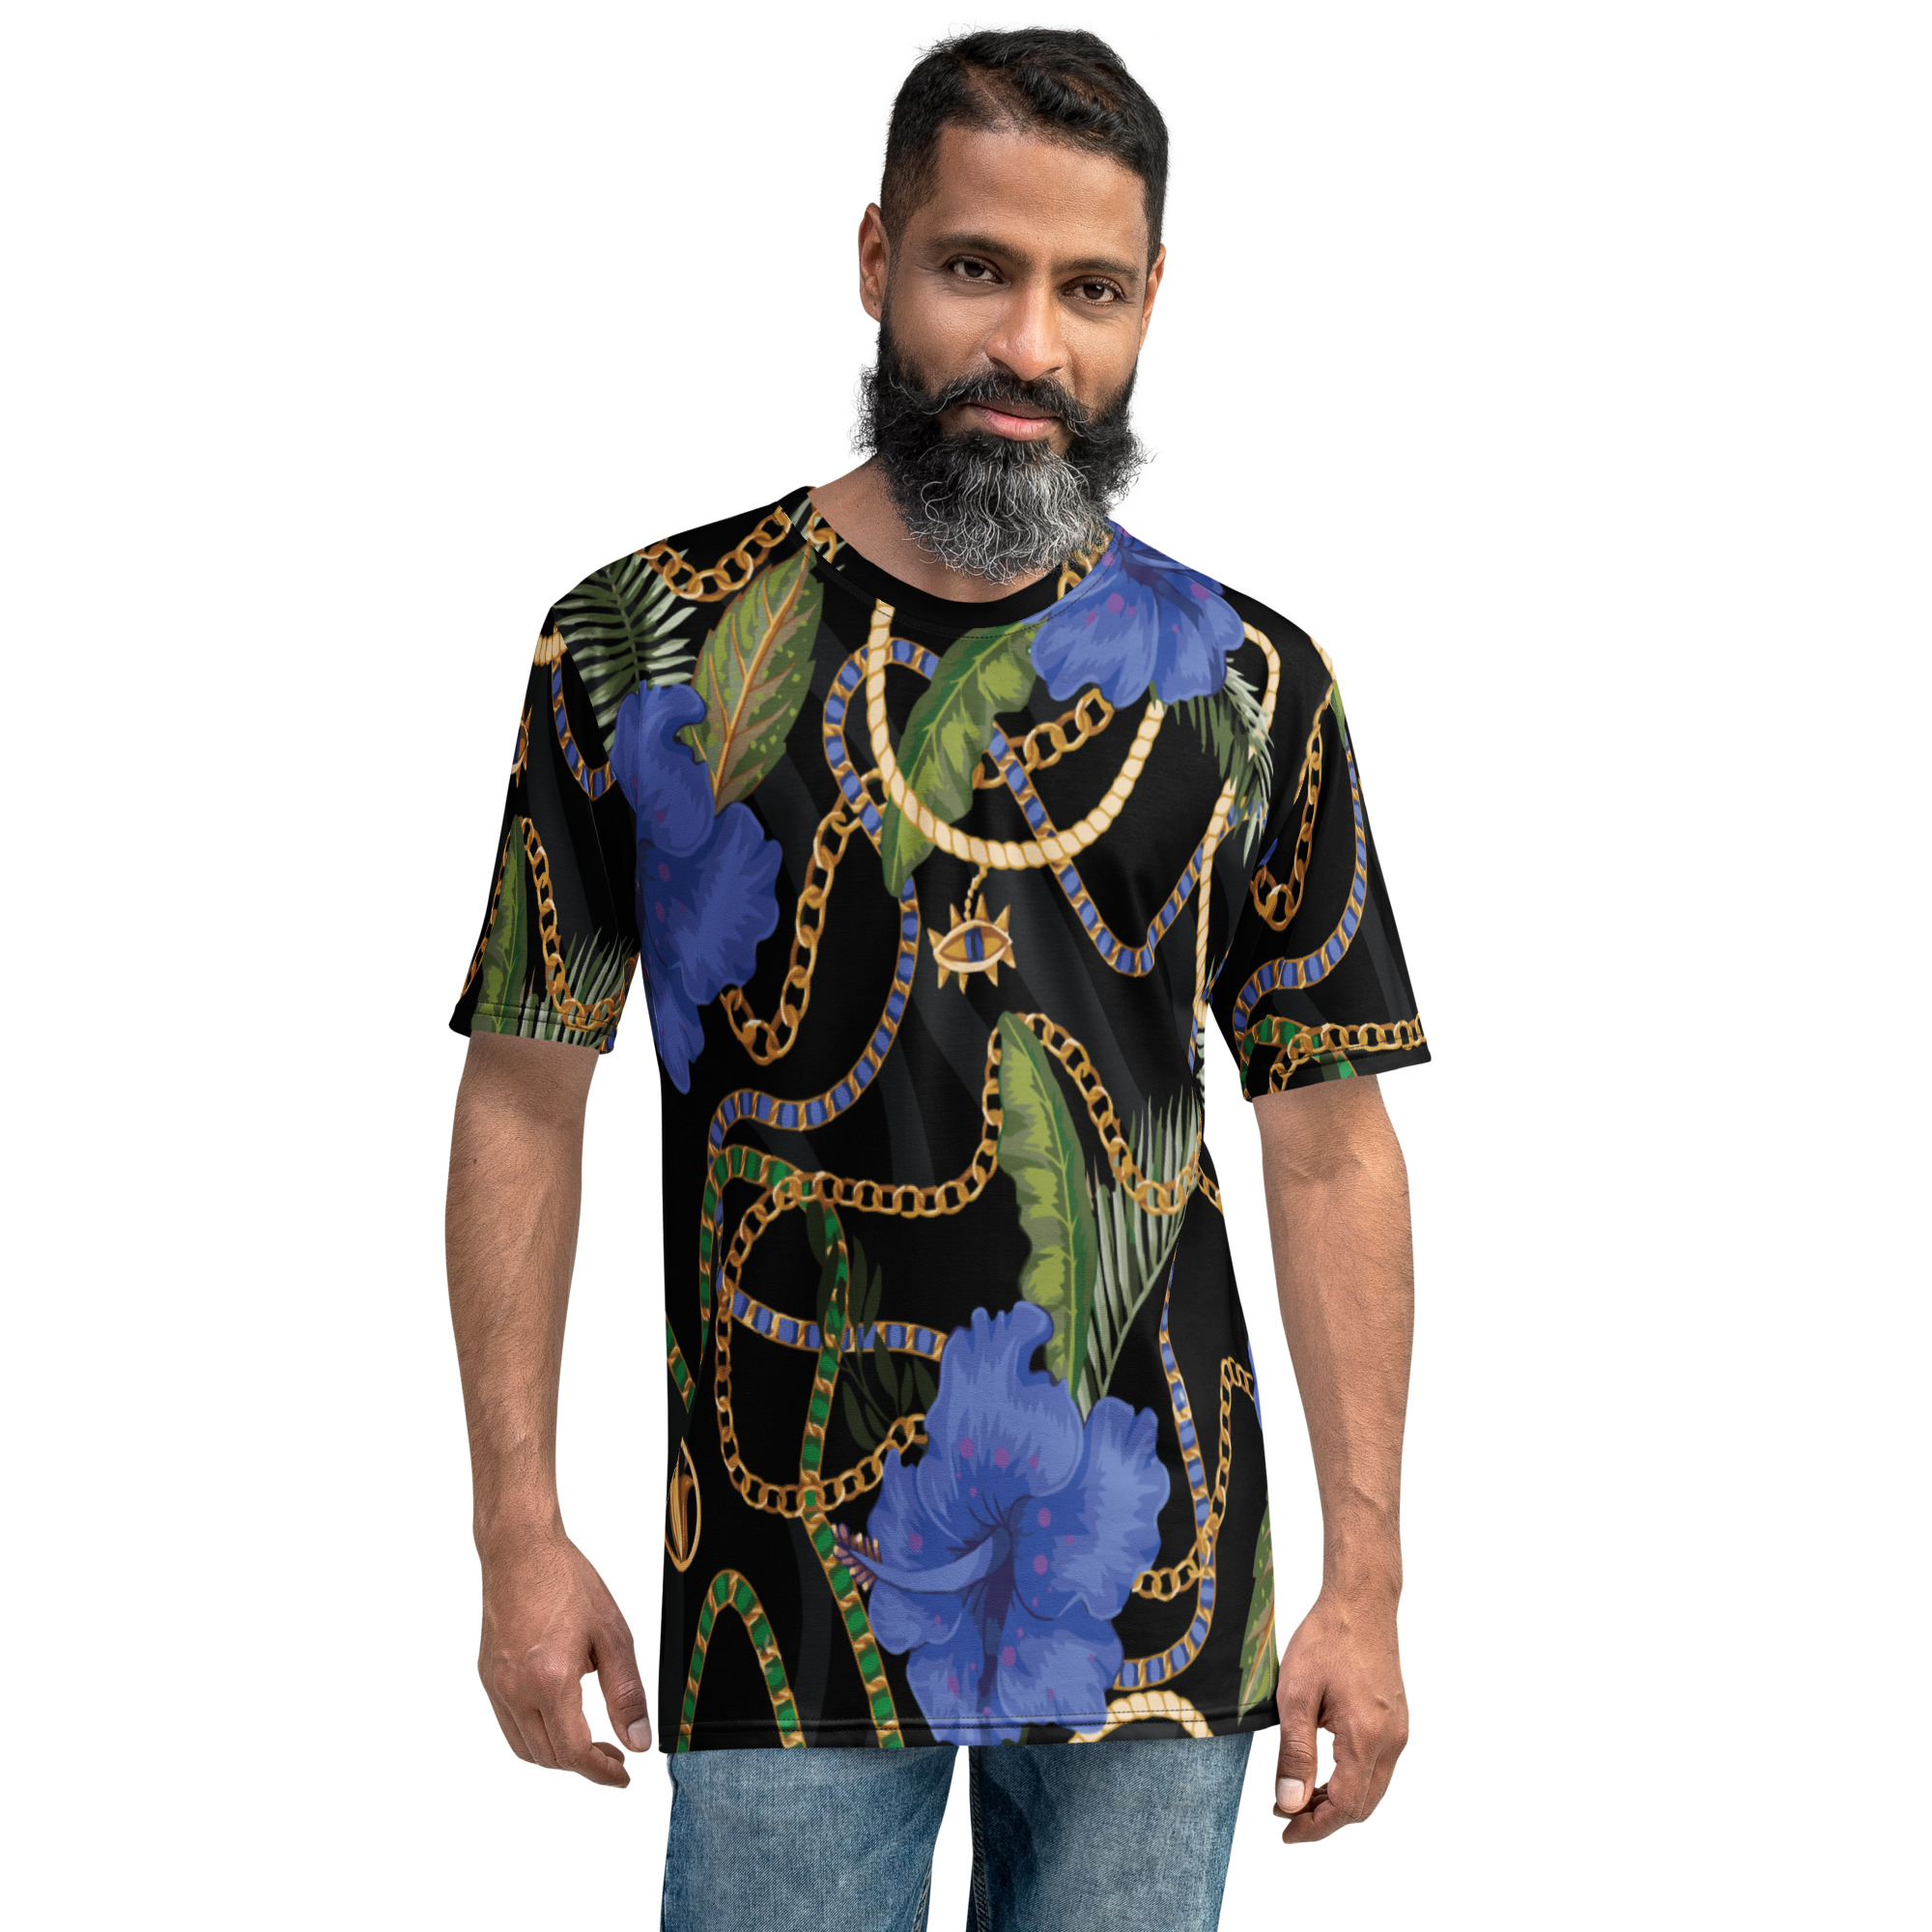 Shirt | technoblade merch ralph lauren shirt sport tek shirts